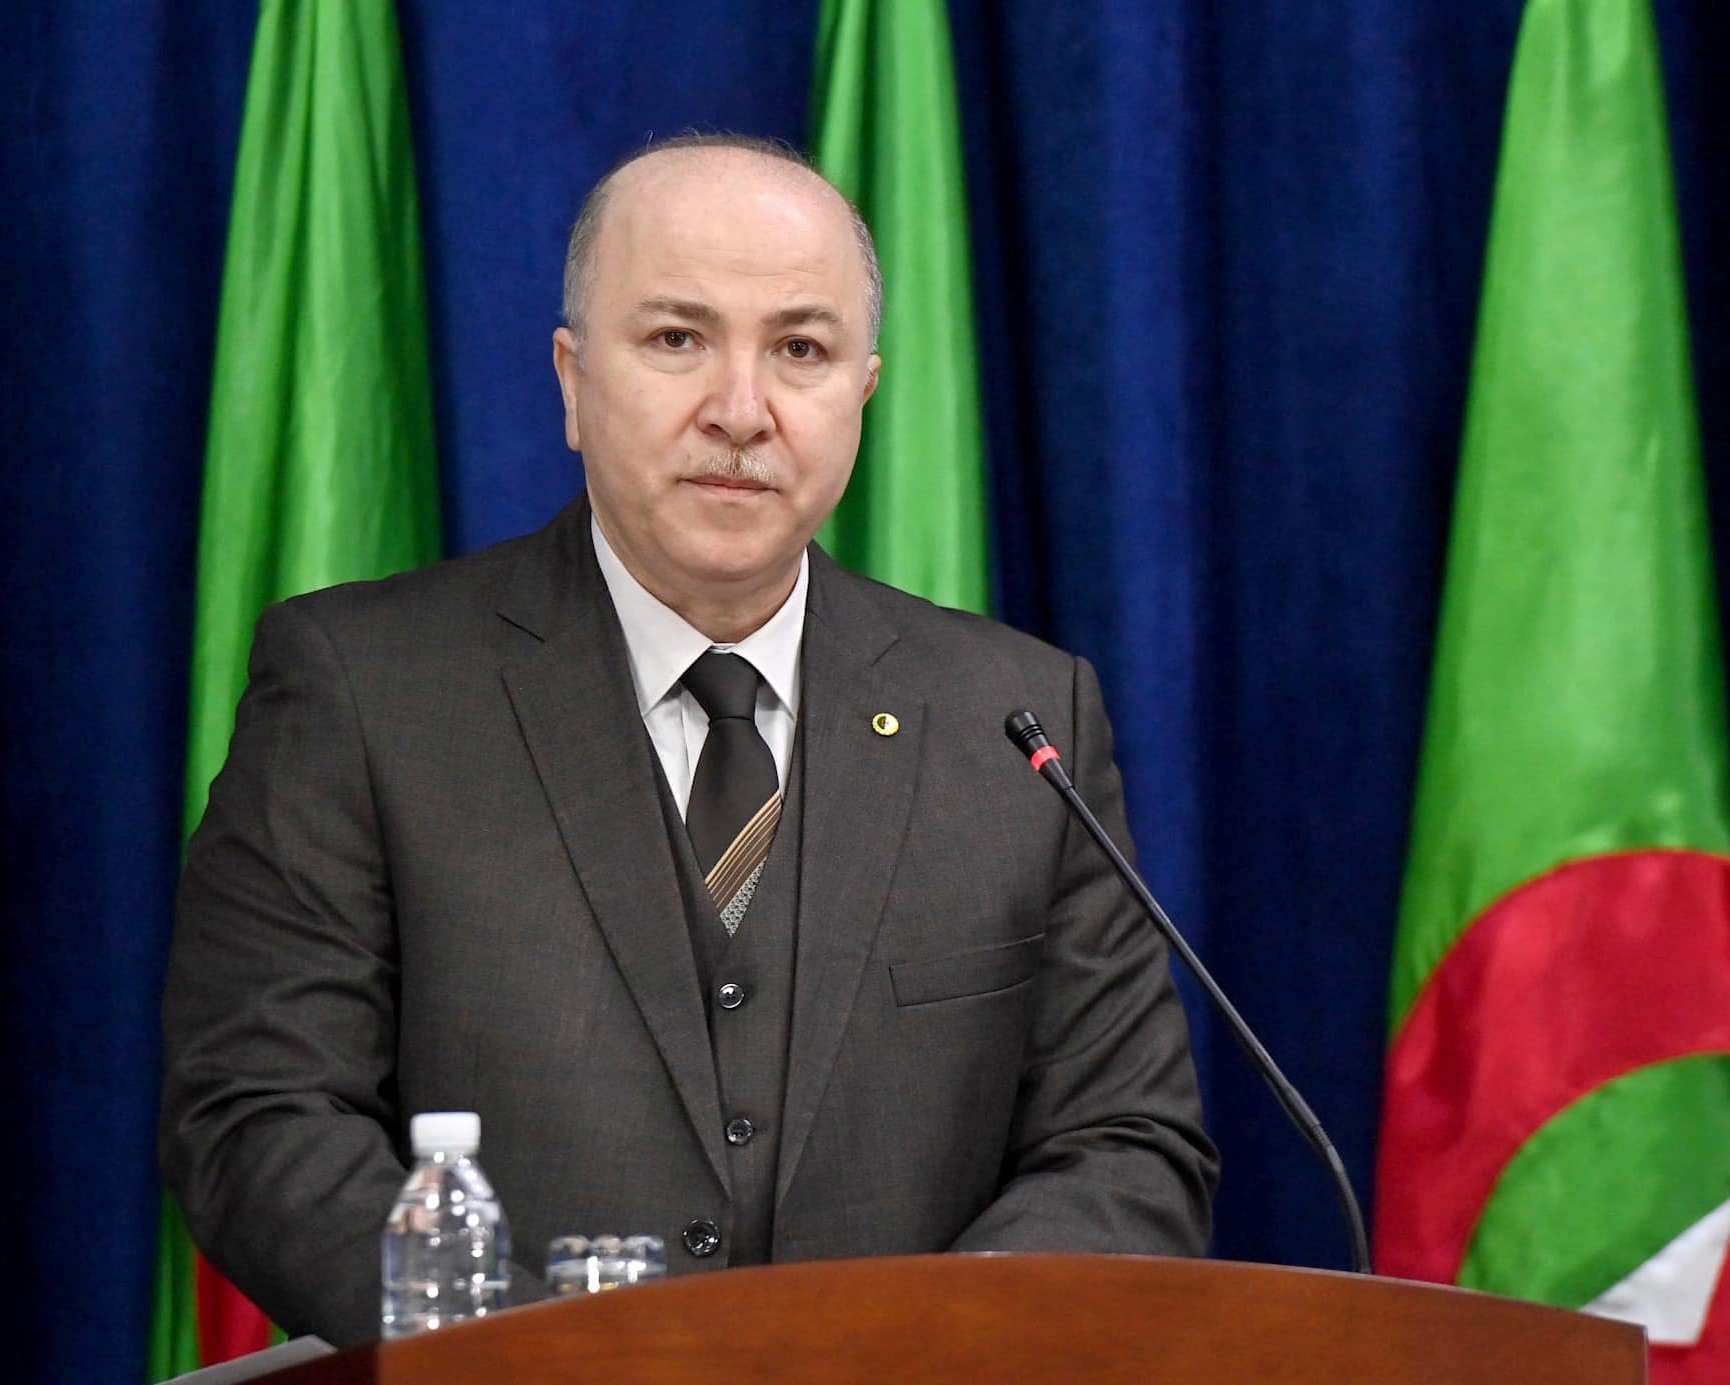 الوزير الأول أيمن بن عبد الرحمن يبعث برسالة تهنئة للجزائريين بمناسبة حلول السنة الهجرية